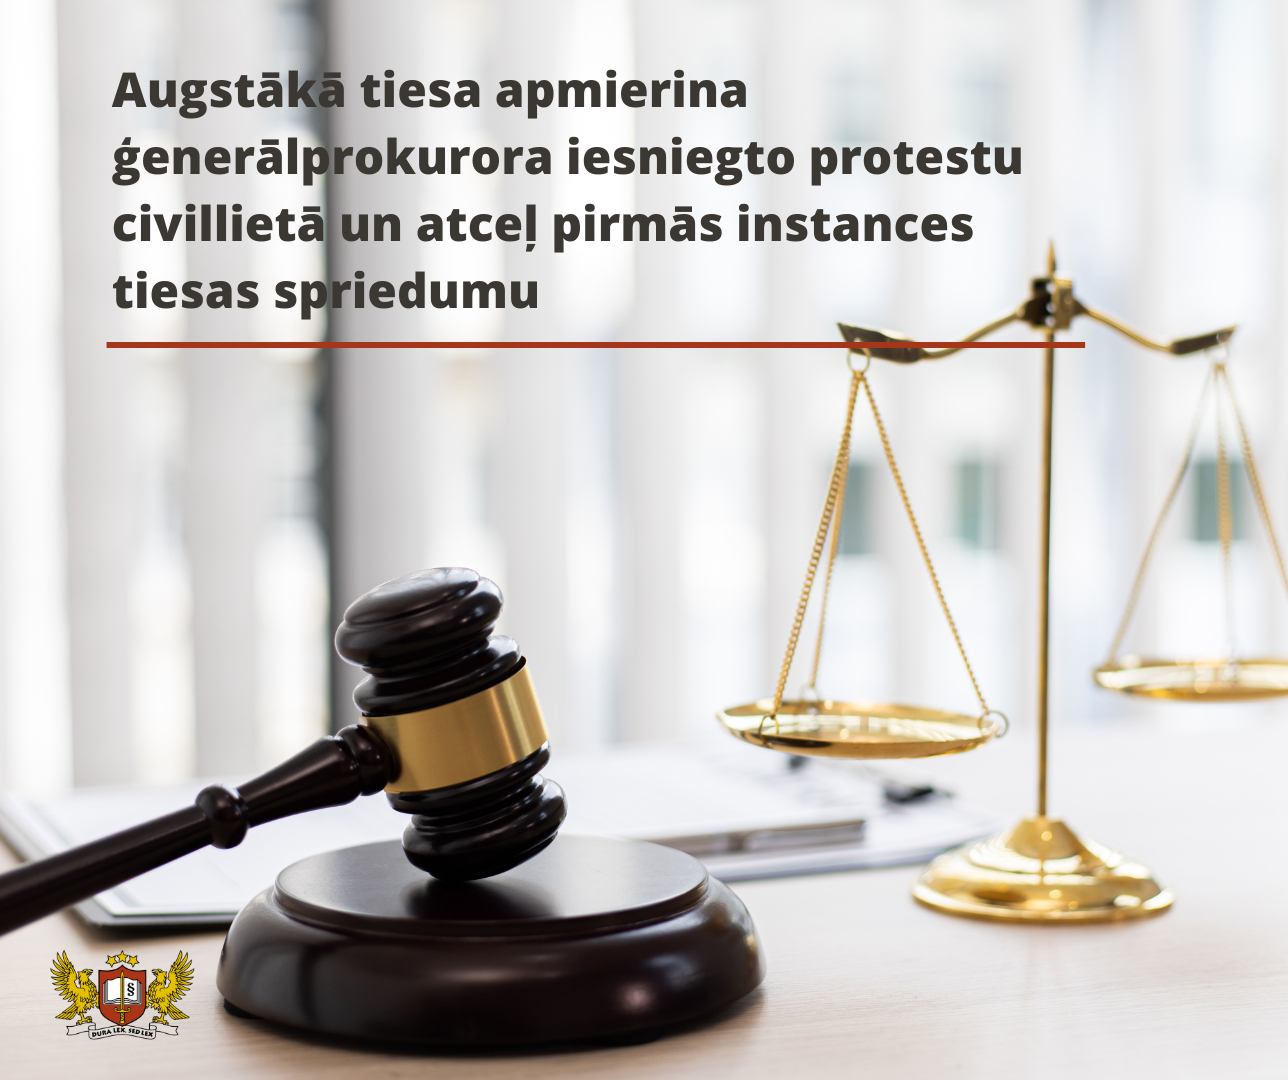 Attēls: Augstākā tiesa apmierina ģenerālprokurora iesniegto protestu civillietā un atceļ pirmās instances tiesas spriedumu